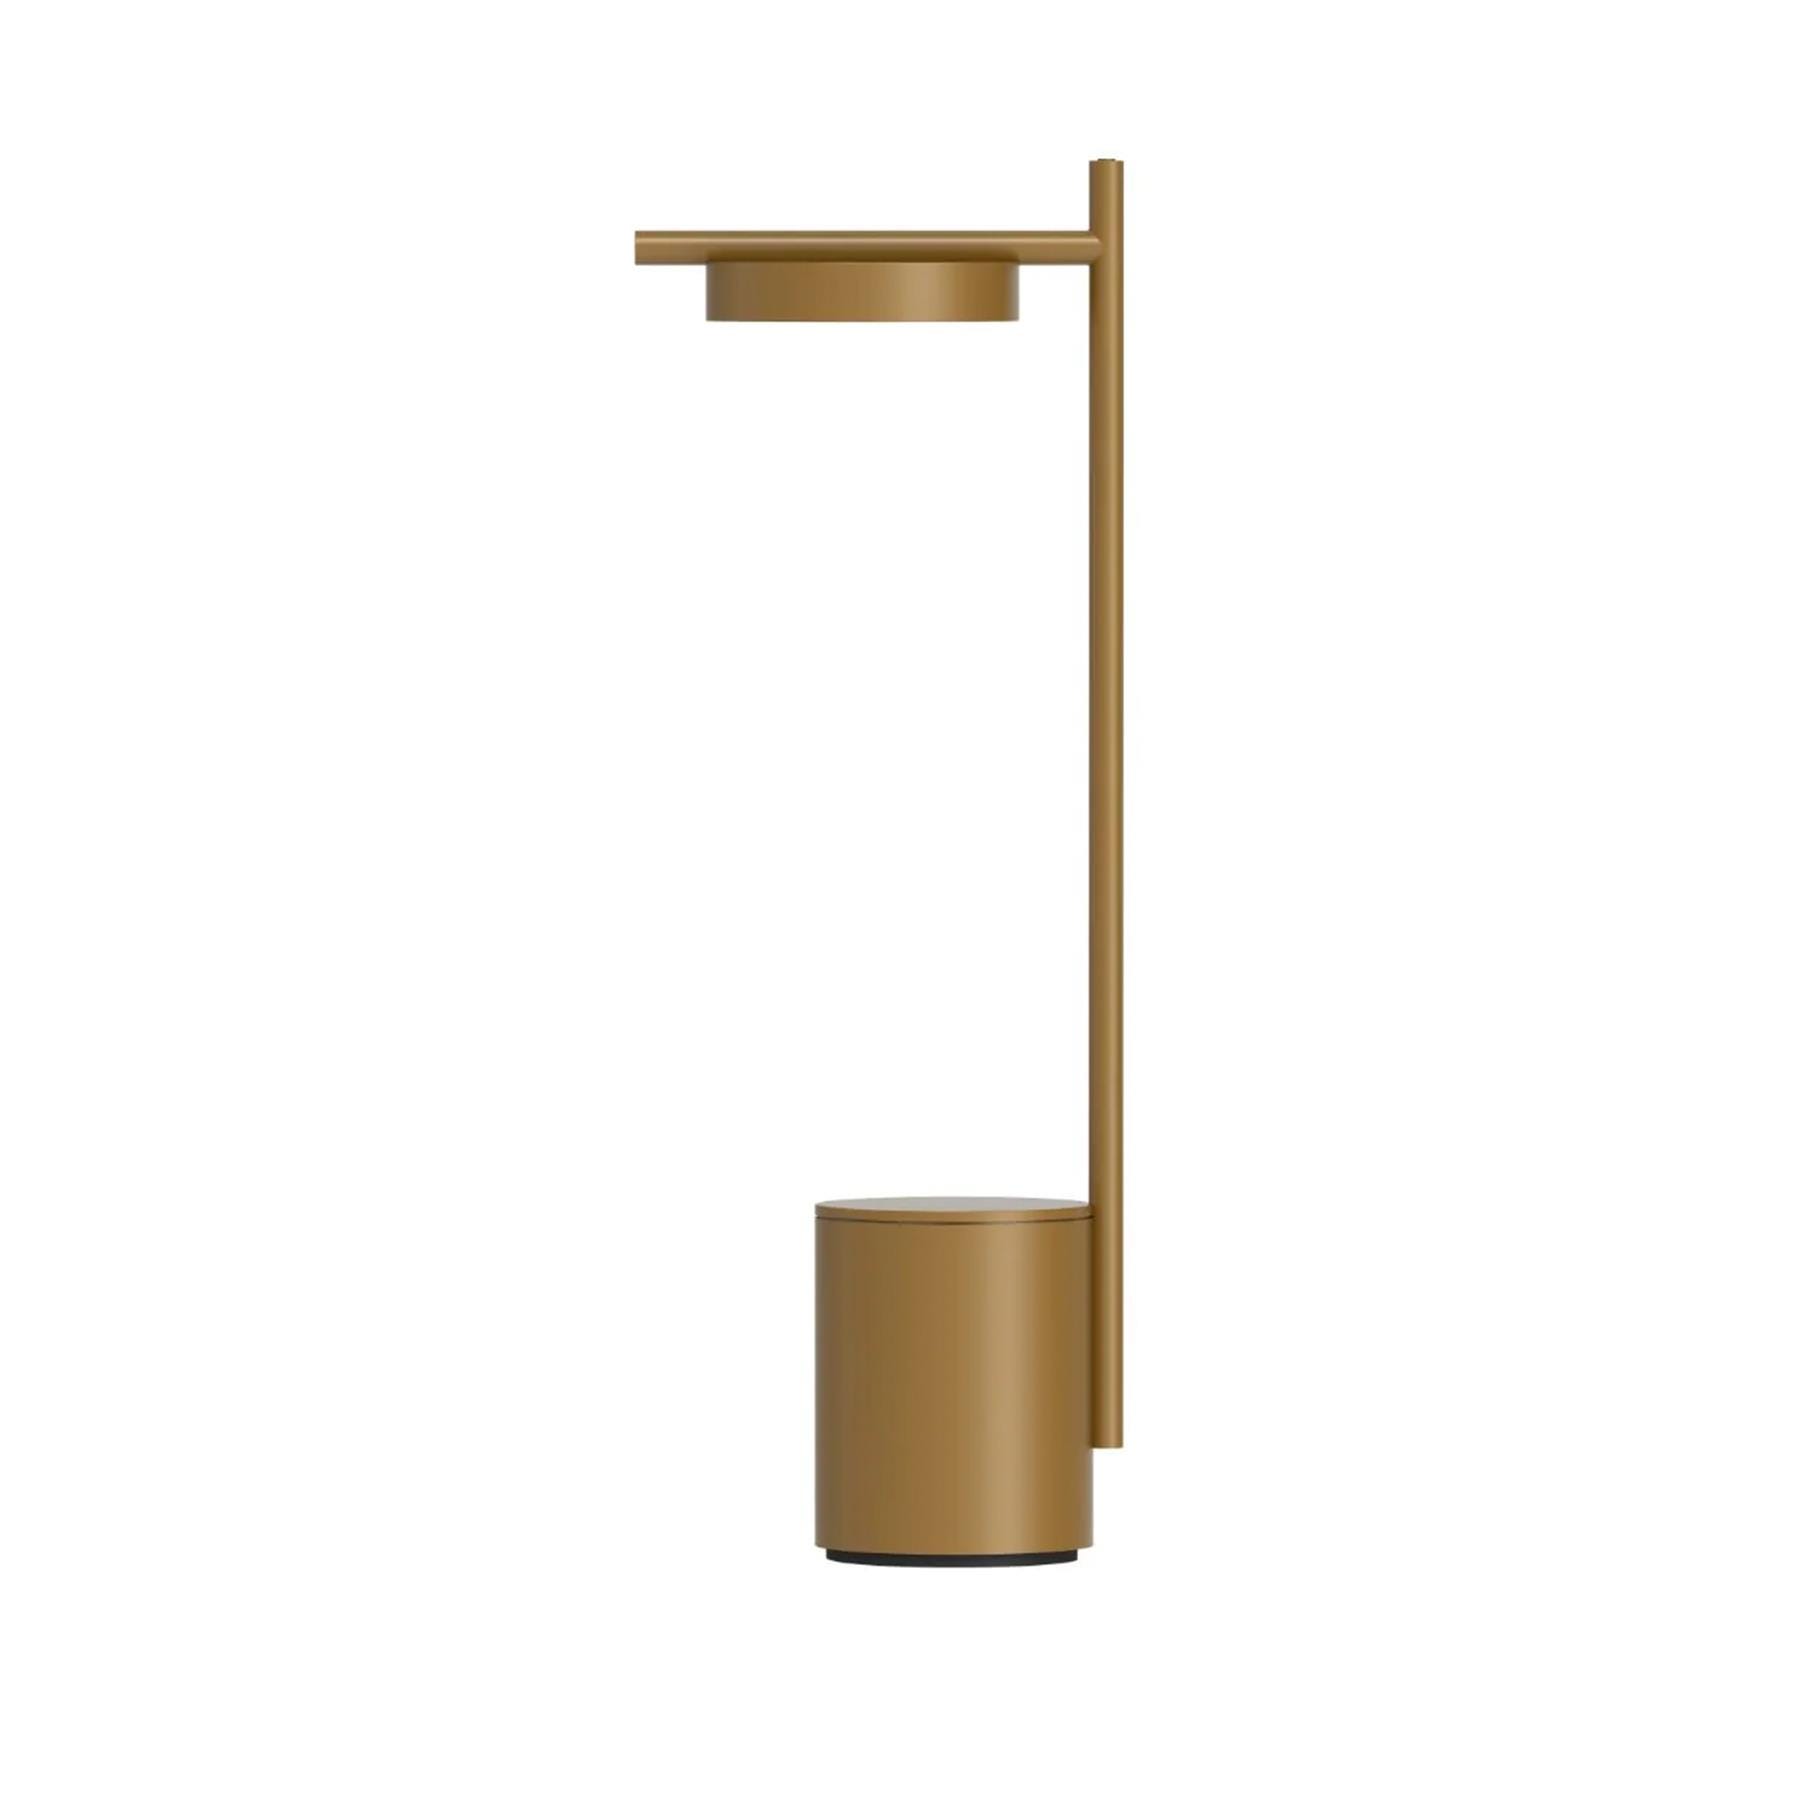 Grupa Igram Portable Table Lamp I Shape Brass Brassgold Designer Lighting From Holloways Of Ludlow